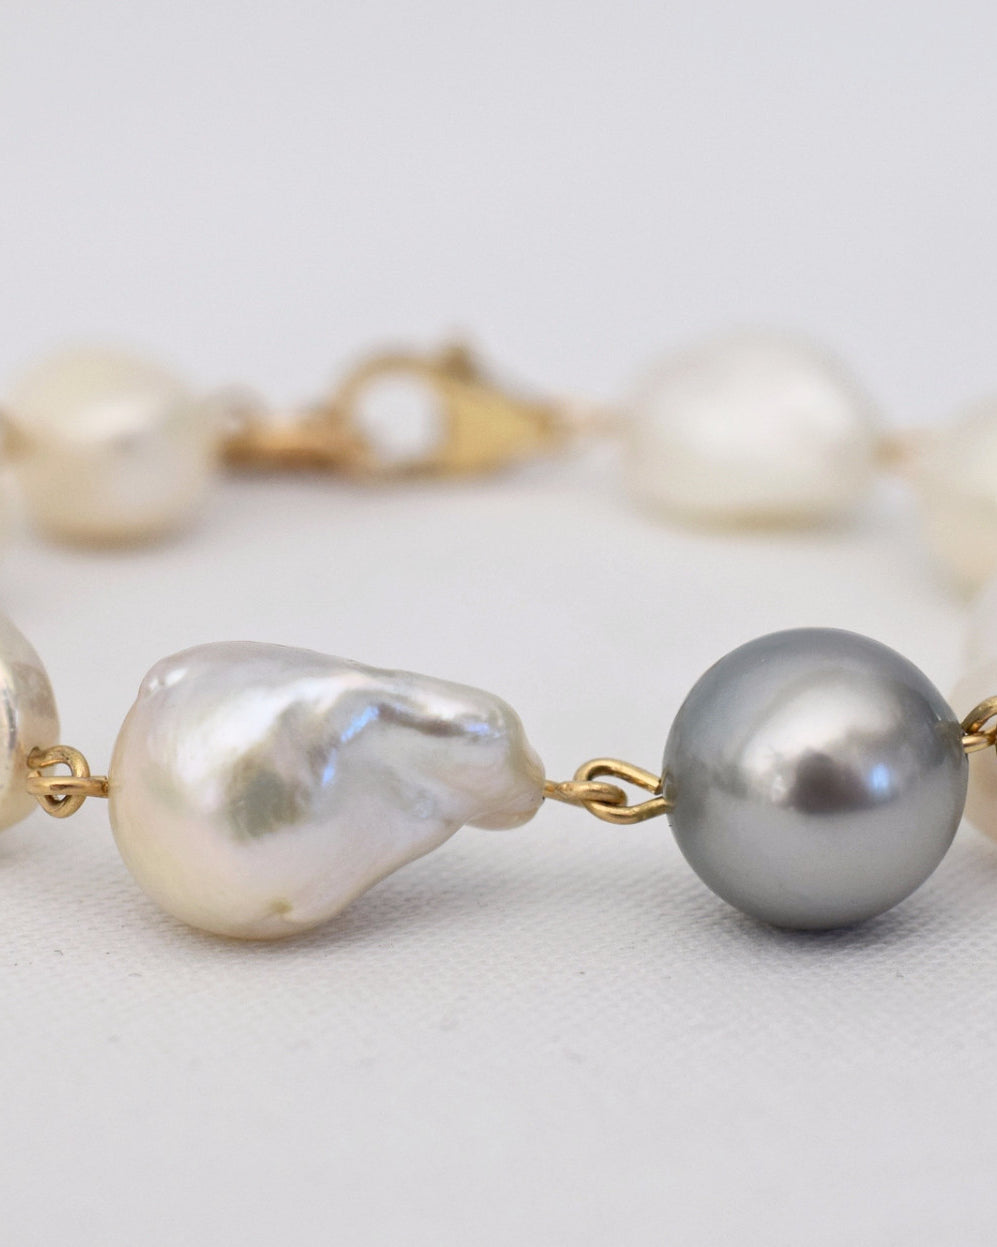 Pearl Medley Bracelet - MILK VELVET PEARLS